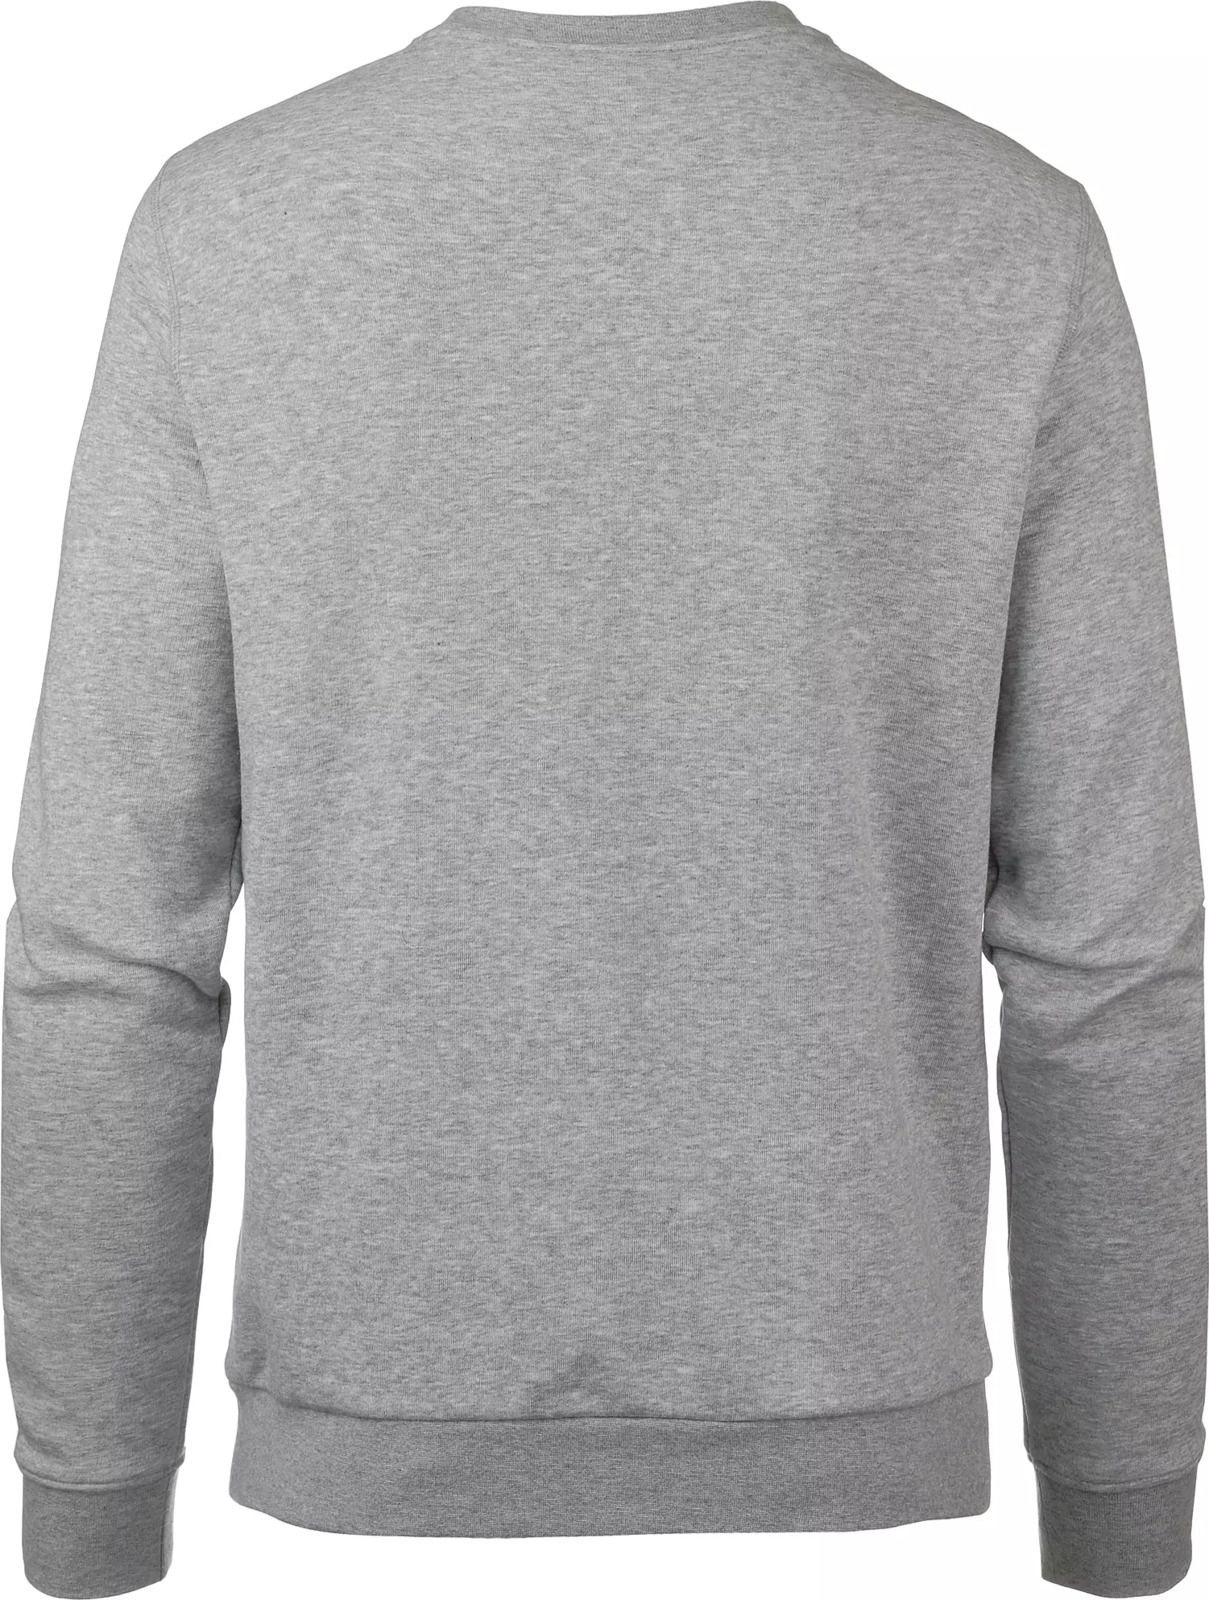   Jack Wolfskin Logo Sweatshirt M, : -. 5018891-6111.  M (46)